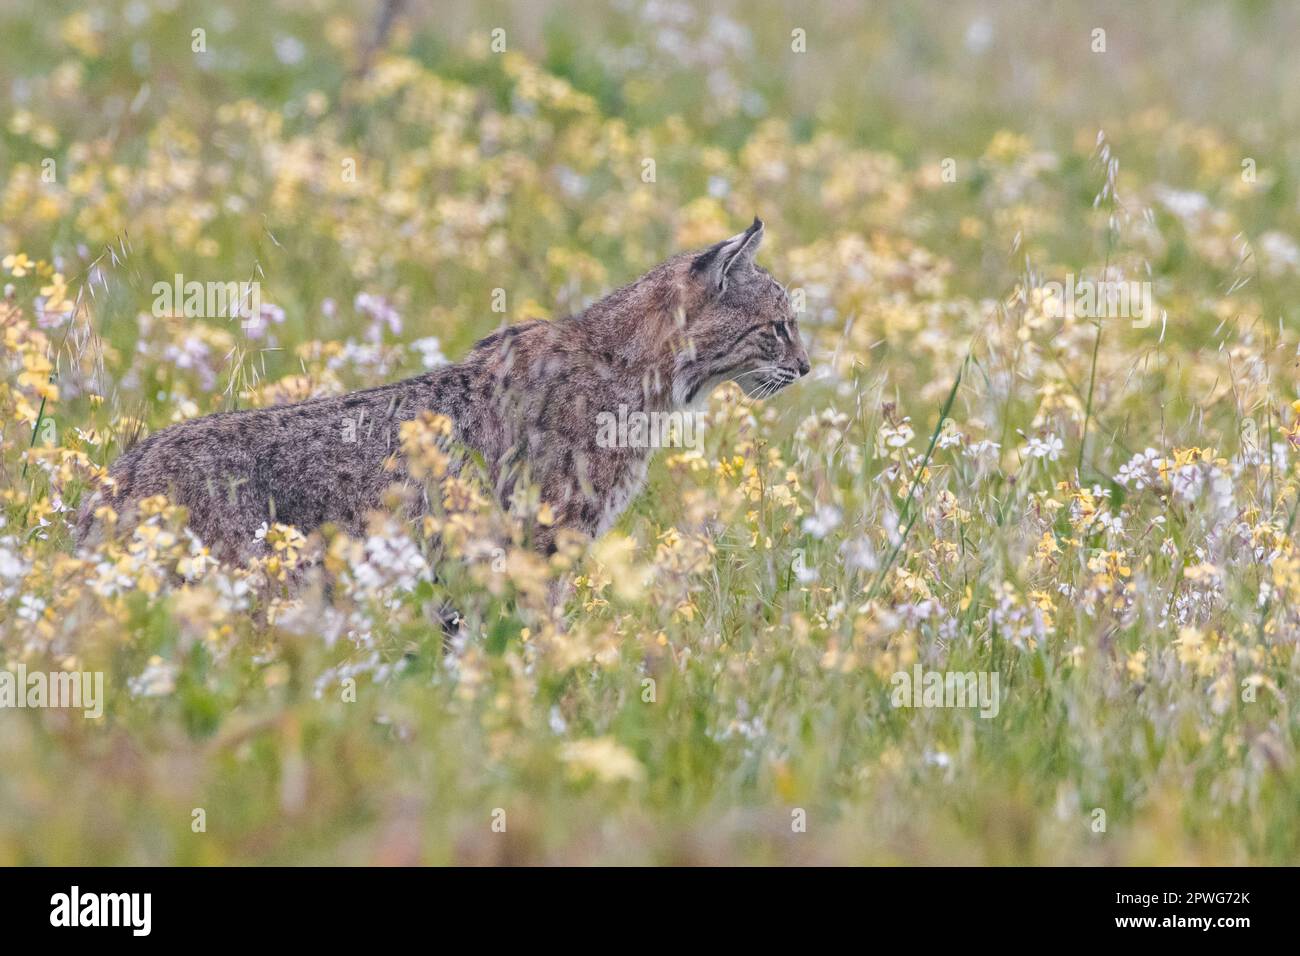 Un lynx roux, Lynx rufus, se trouve dans un champ de fleurs en fleurs, peut-être un radis sauvage, Raphanus sativus, une espèce introduite en Californie. Banque D'Images